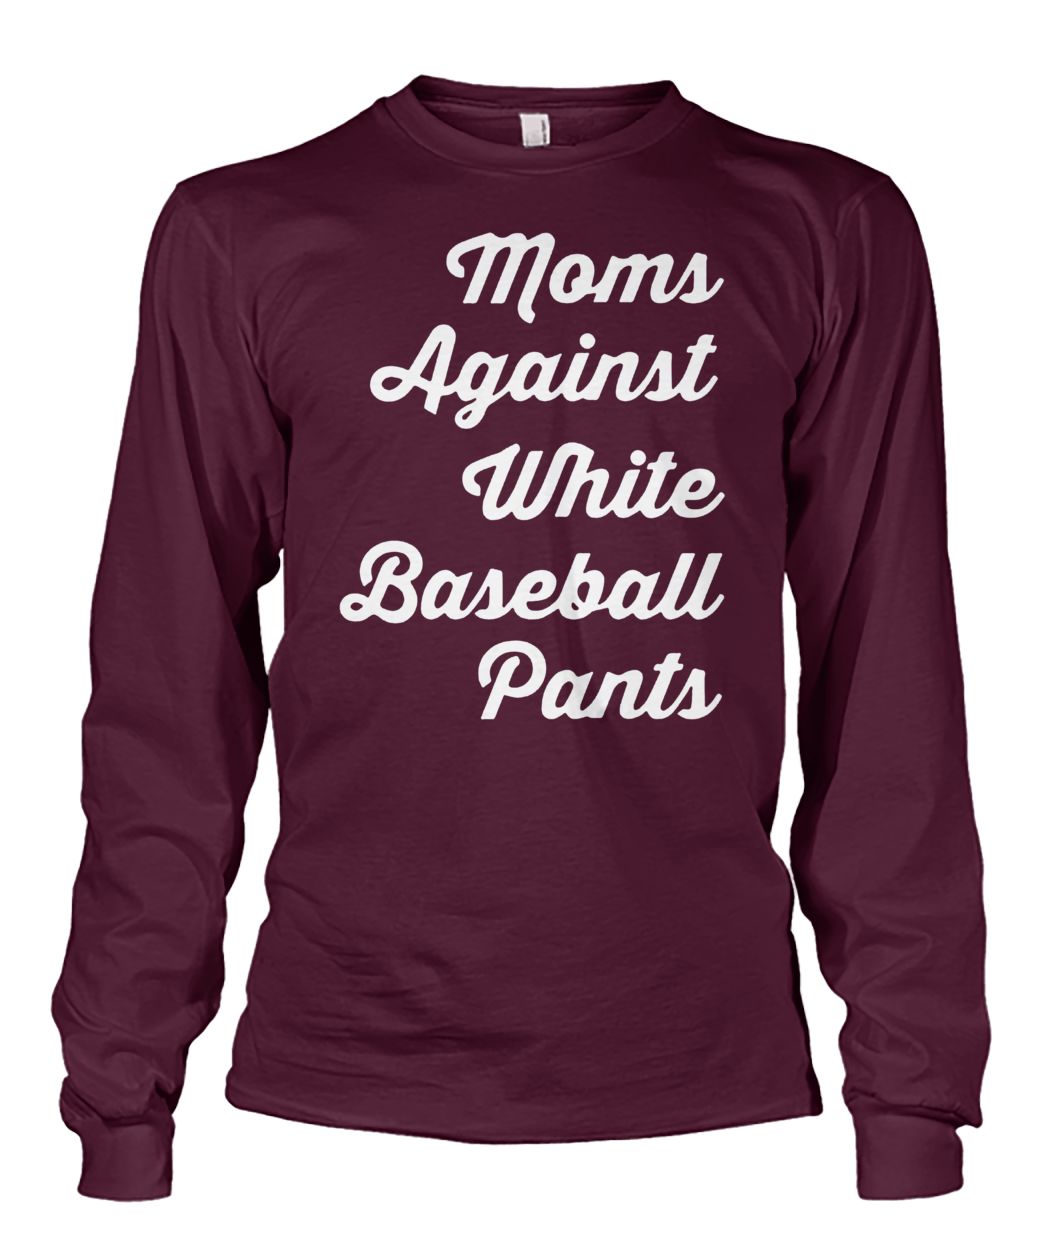 Mom against white baseball pants unisex long sleeve